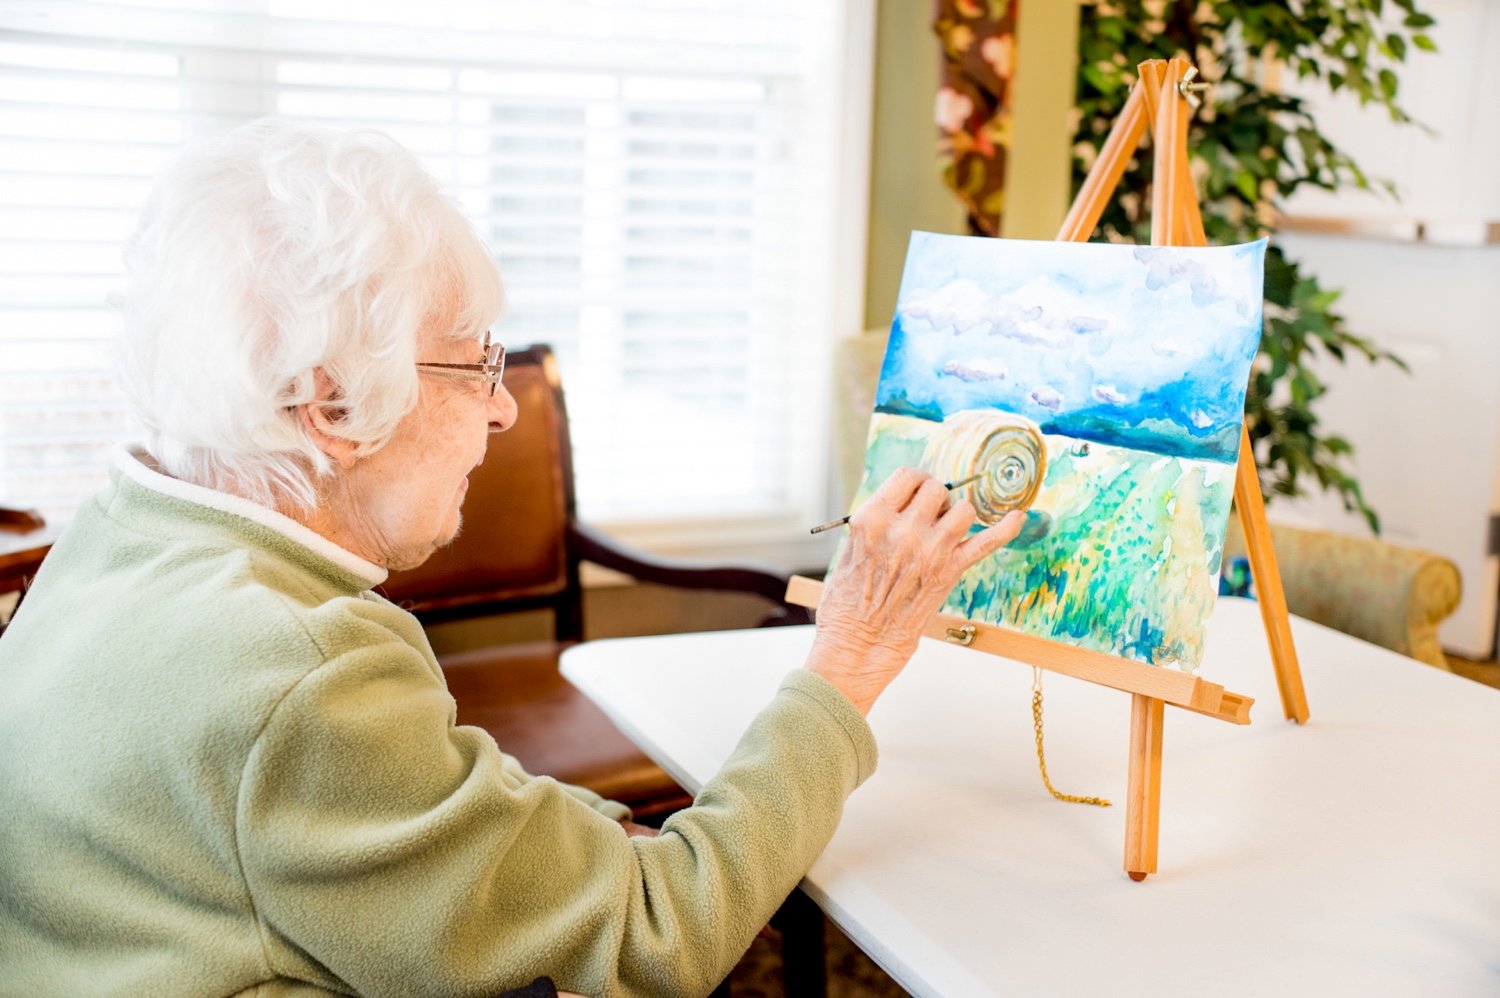 A senior woman painting a farm scene on an easel